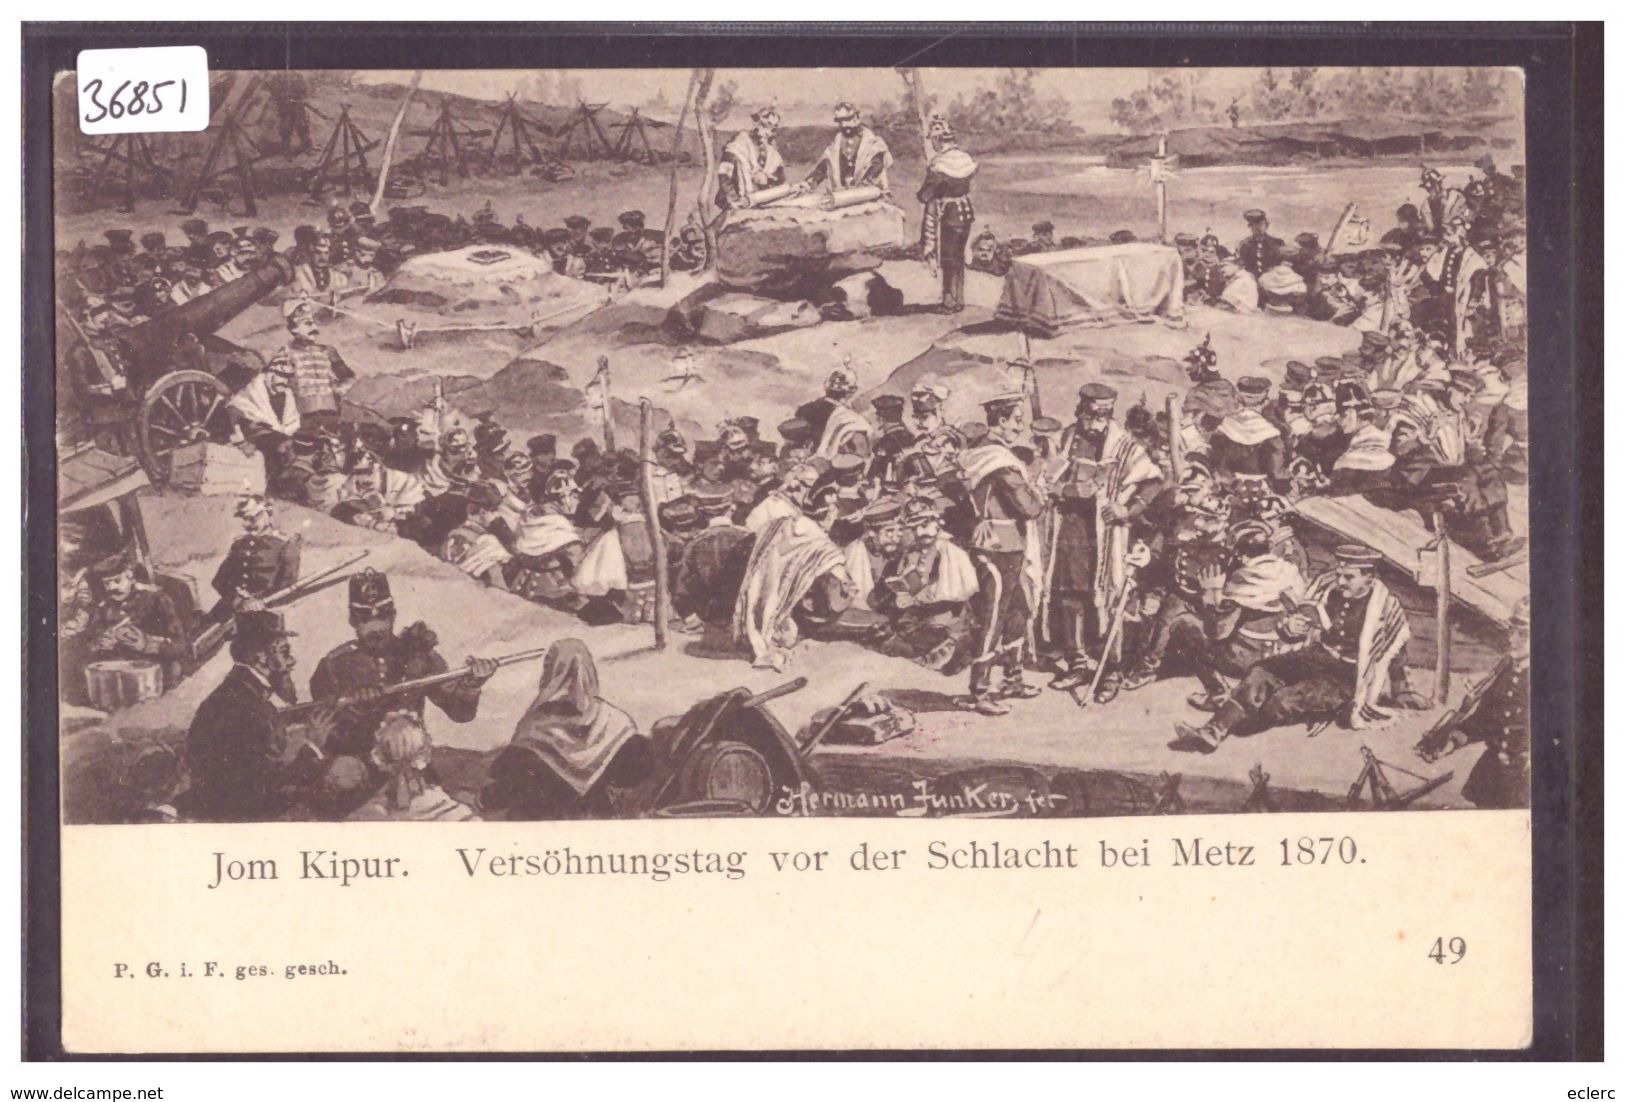 JOM KIPUR - VERSÖHNUNGSTAG VOR DER SCHLACHT BEI METZ 1870  - SCENE OF JEWISH LIFE  BY HERMANN JUNKER - TB - Judaisme